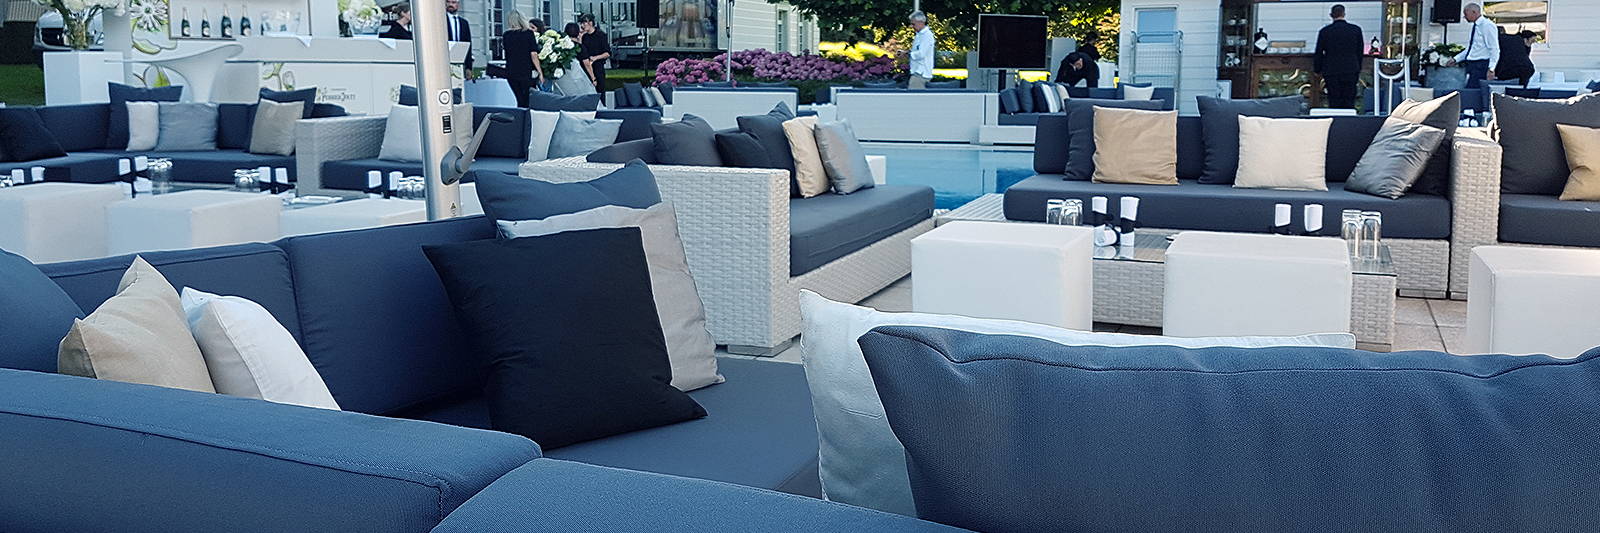 Grosse Outdoor Lounge mieten für Event mit Sitzwürfel und Dekokissen